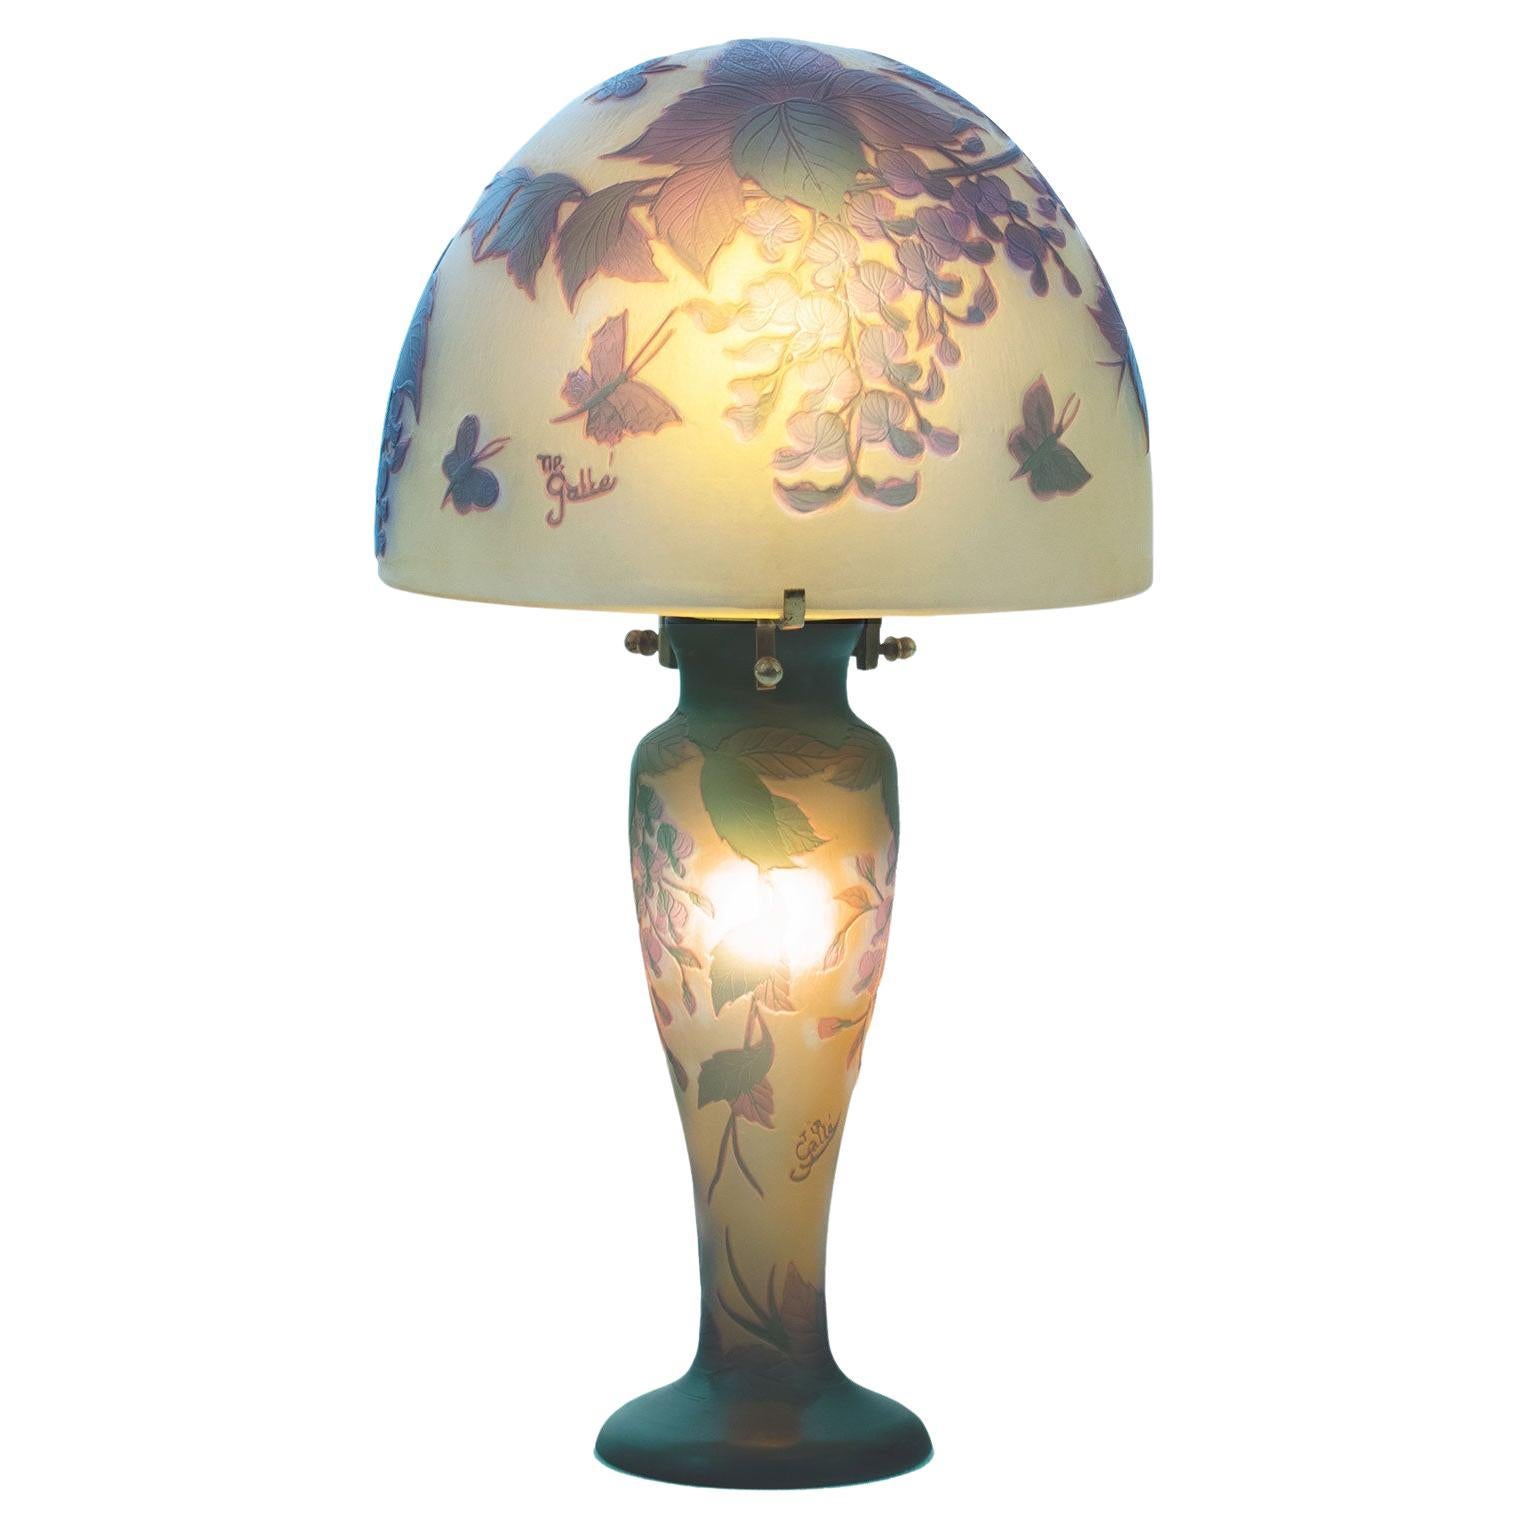 GALLÉ Tip - Elegant Art Nouveau mushroom lamp in acid-etched glass.